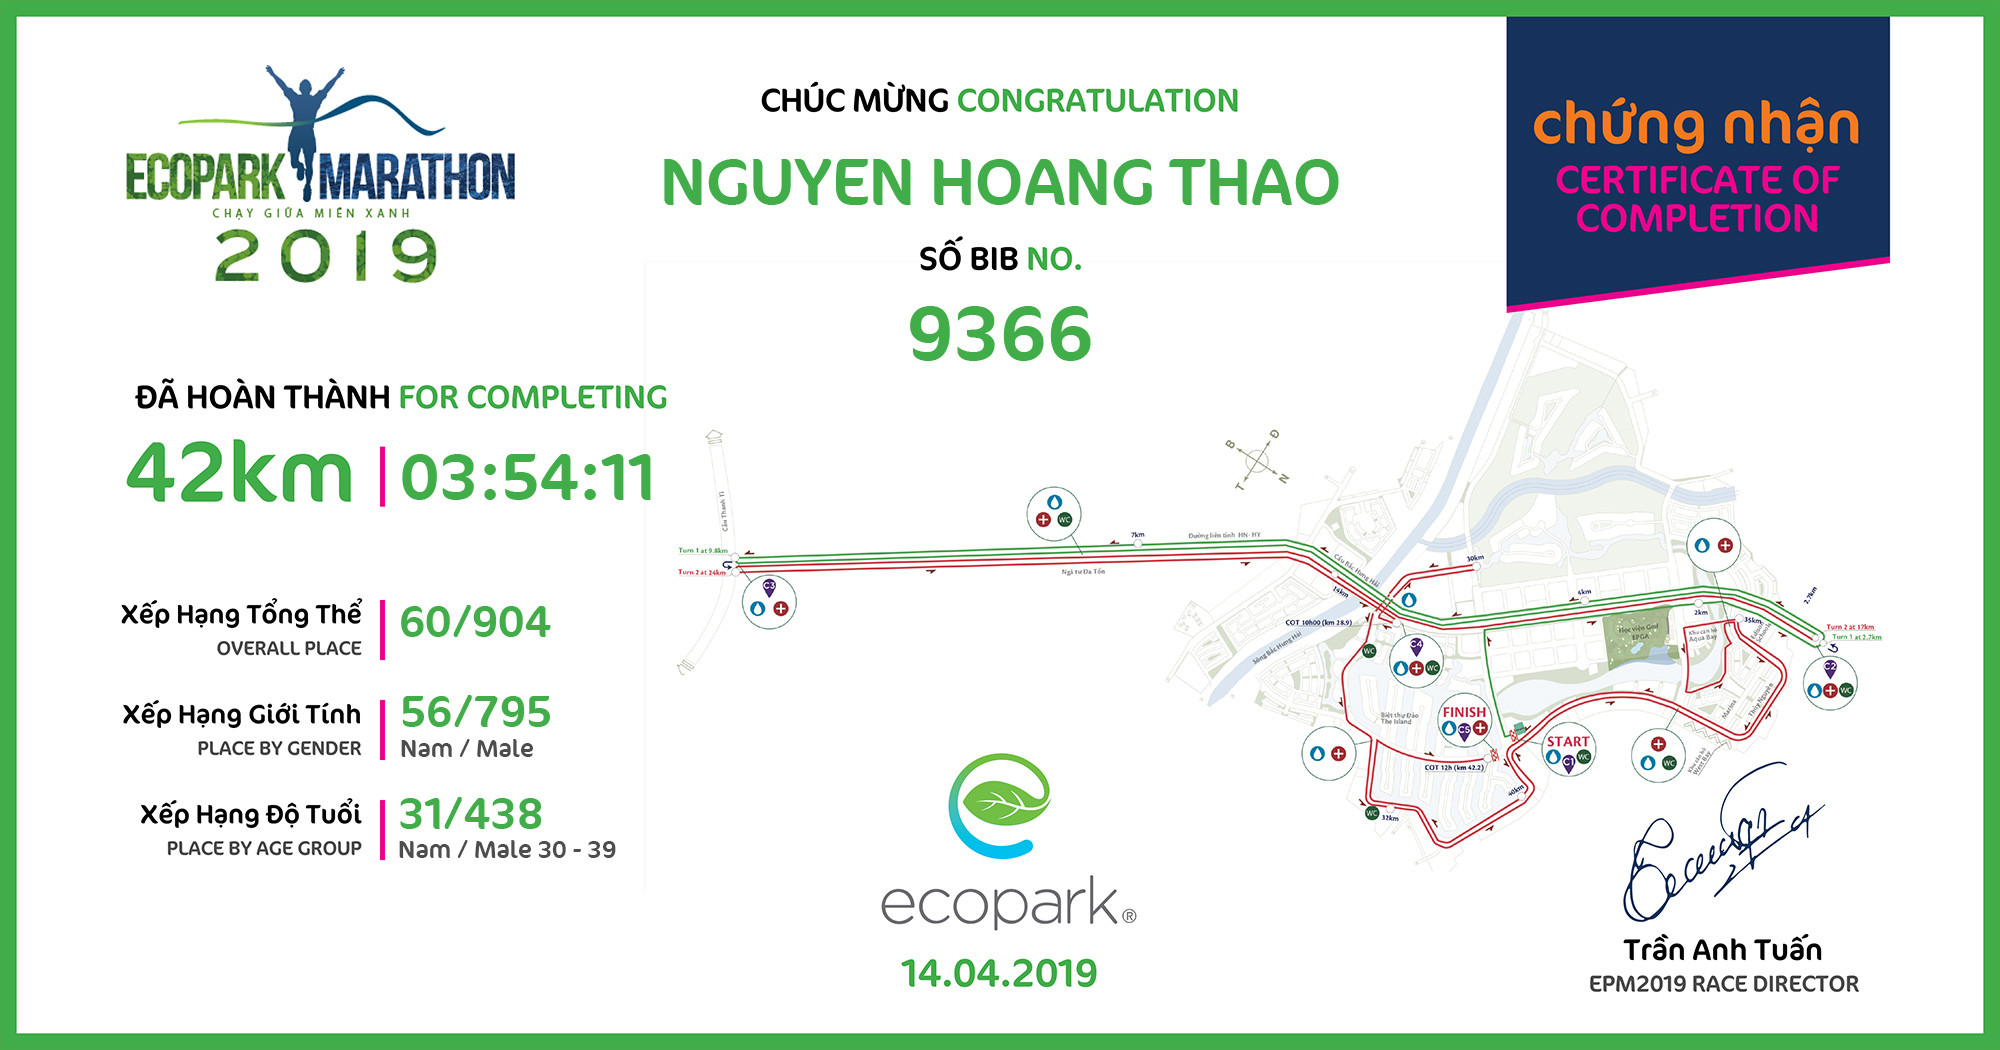 9366 - Nguyen Hoang Thao